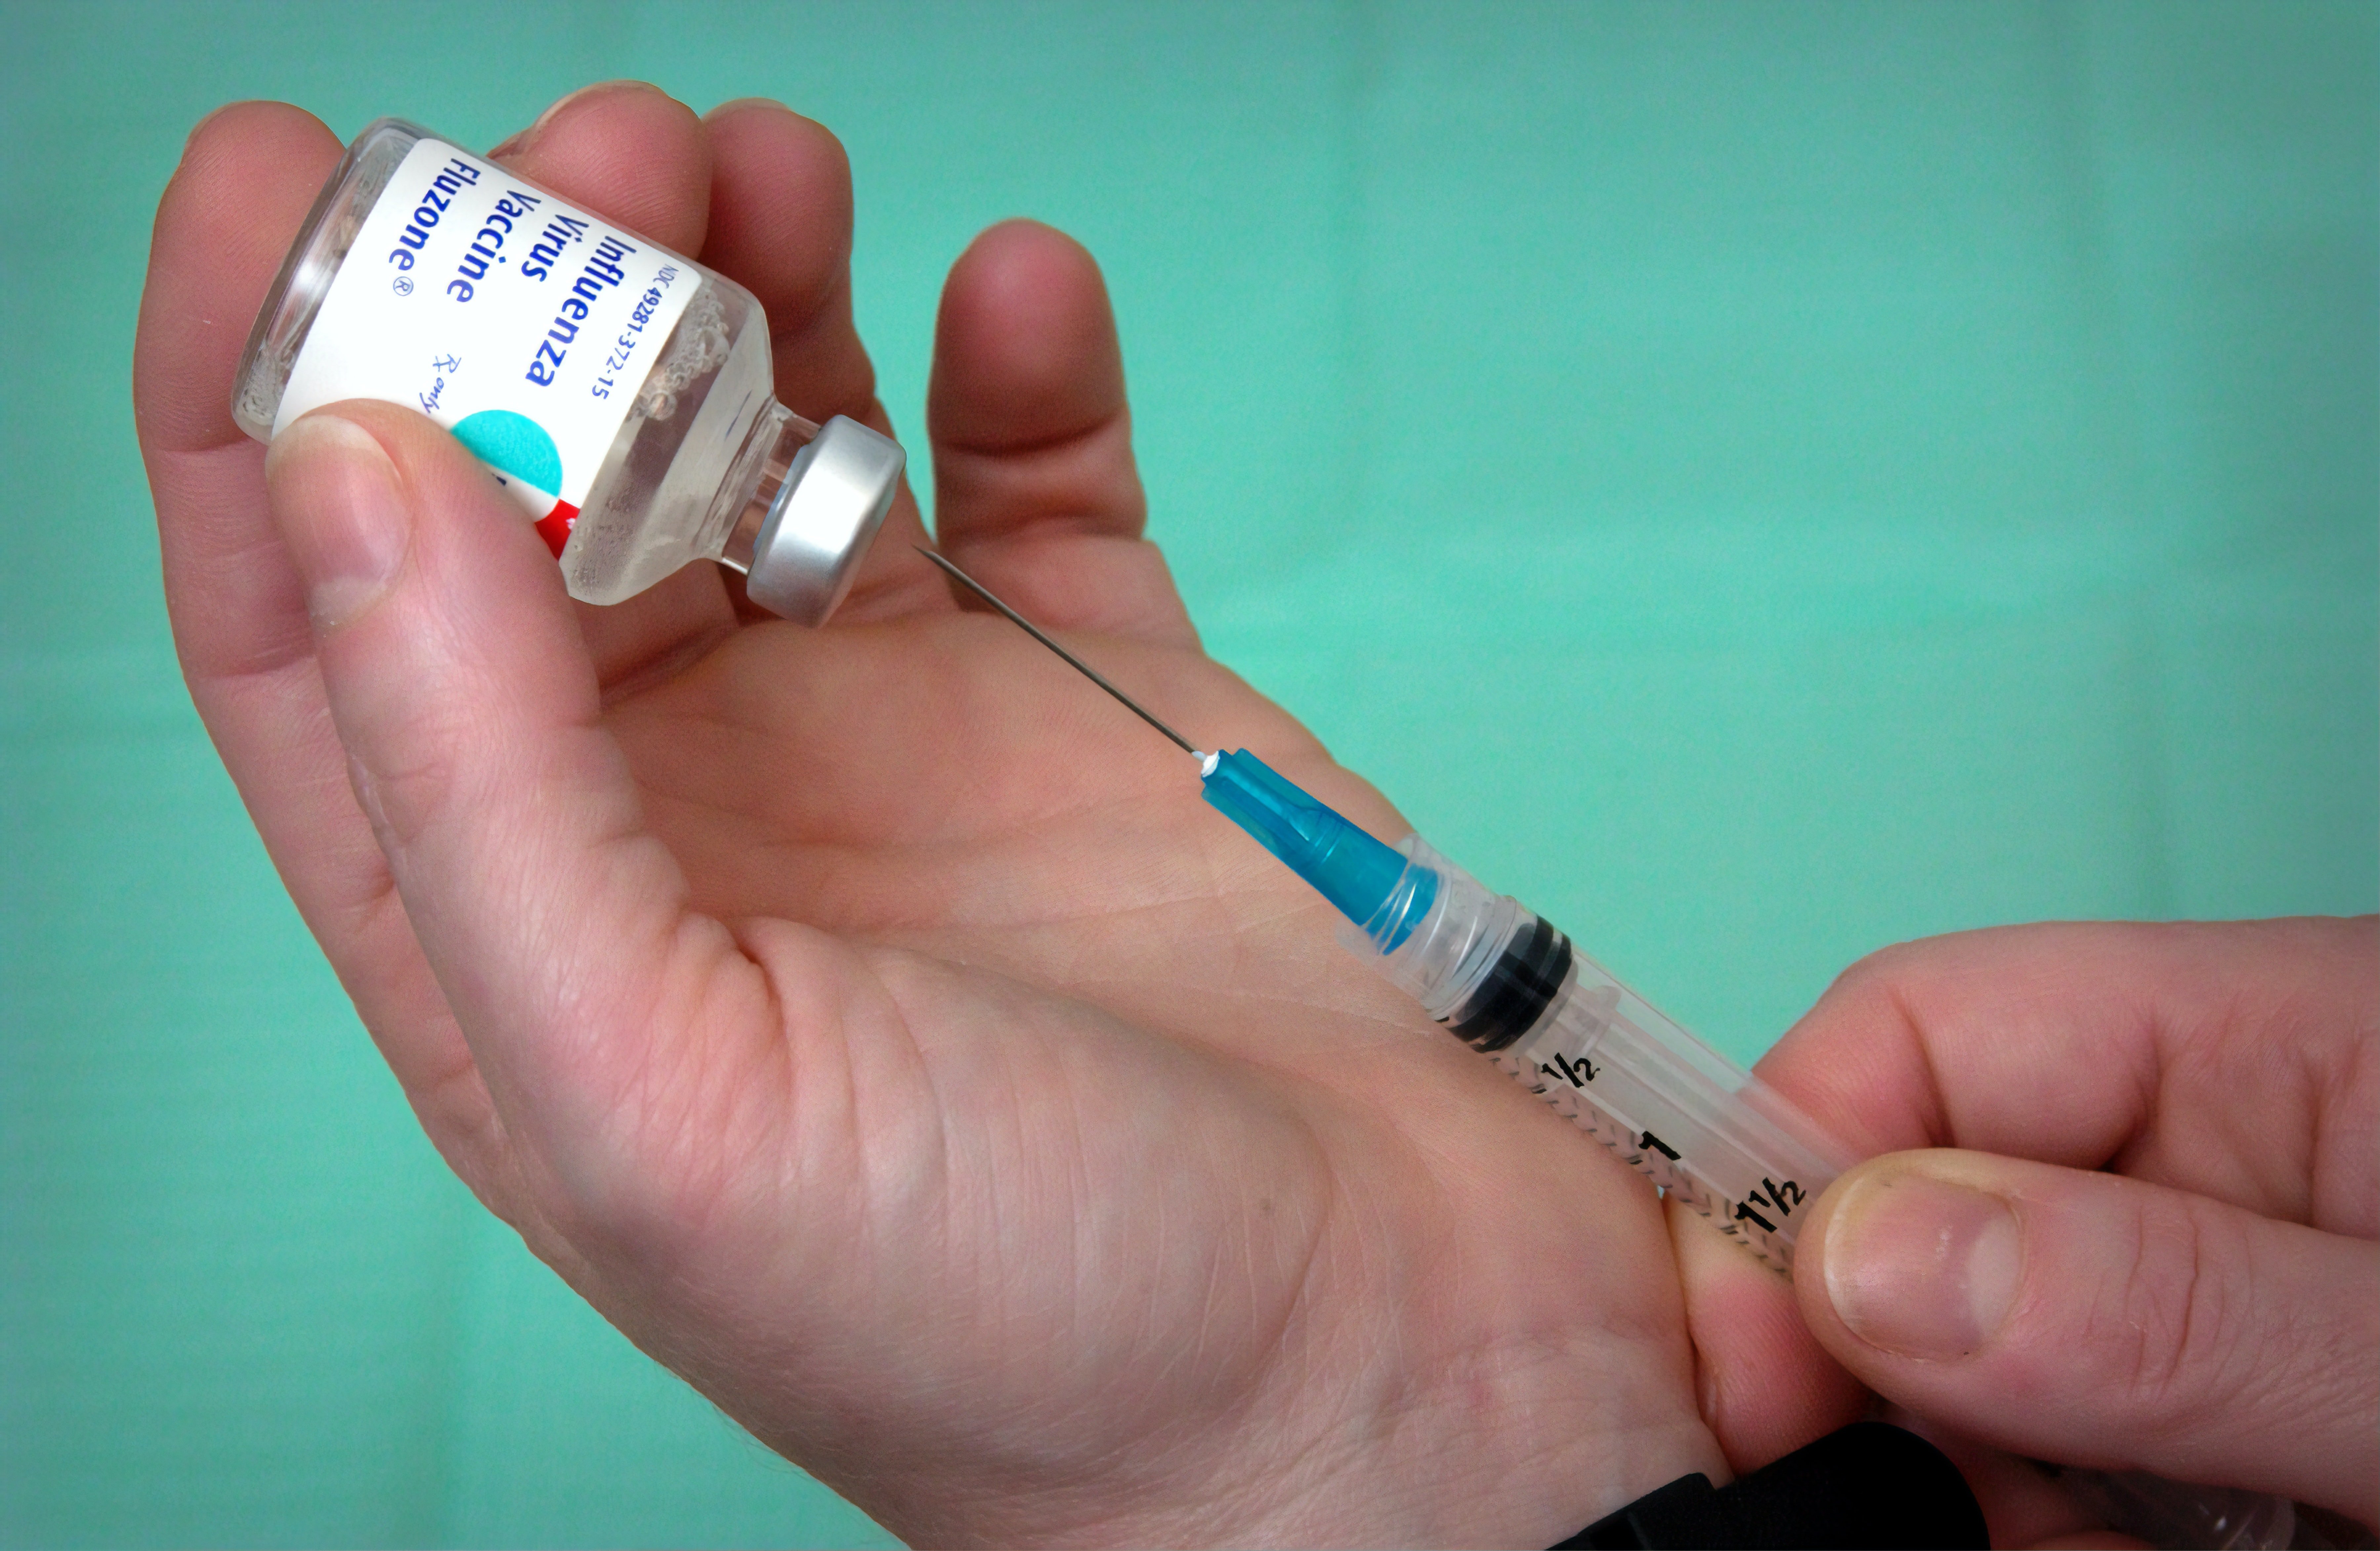 Primers resultats positius d'una possible vacuna per al coronavirus